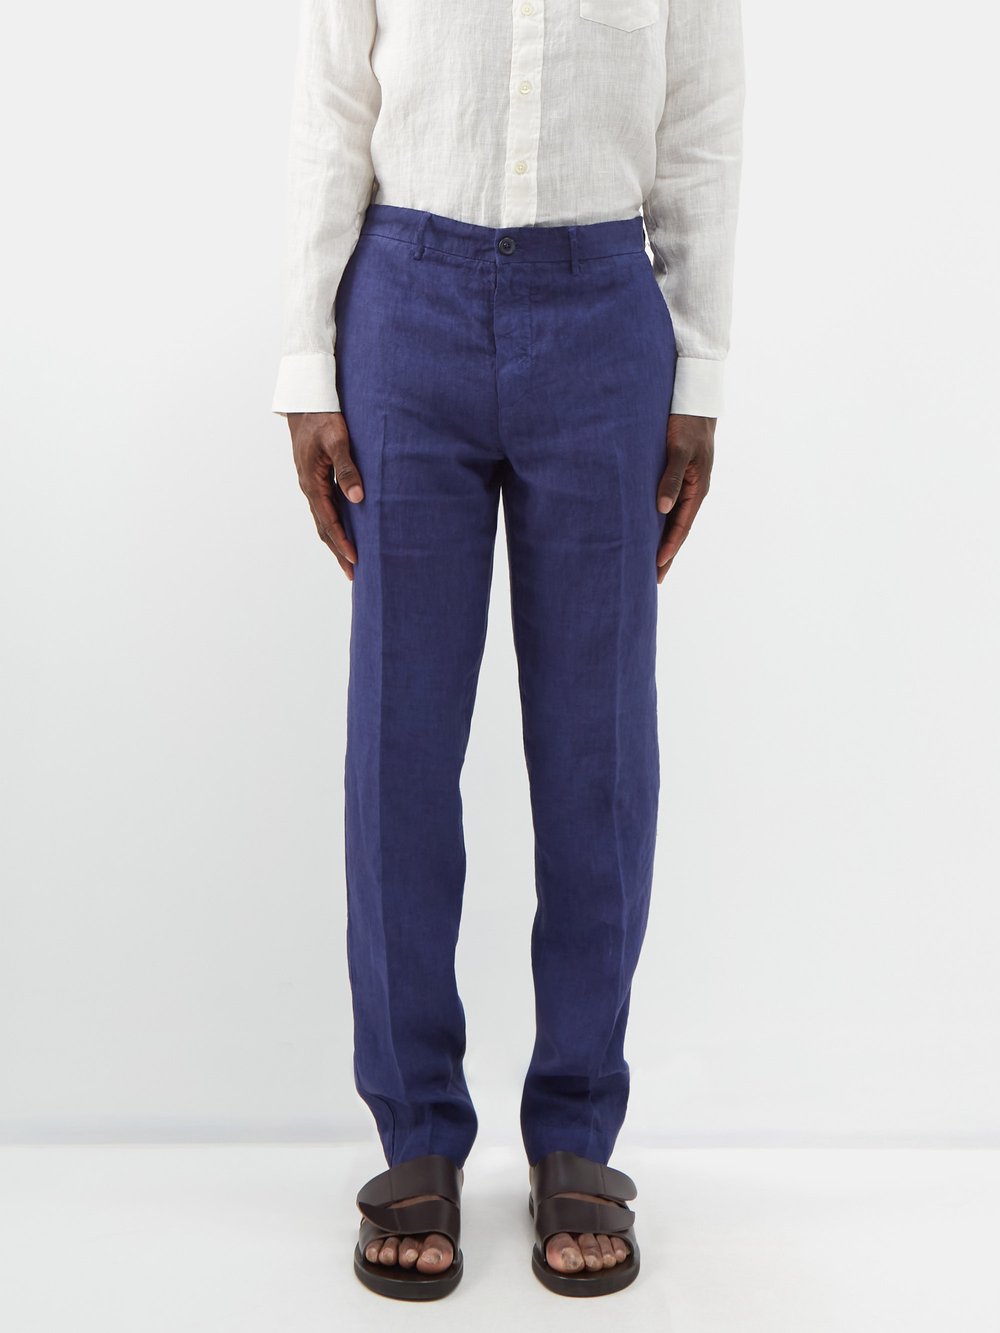 Узкие костюмные брюки из льна 120% Lino, синий